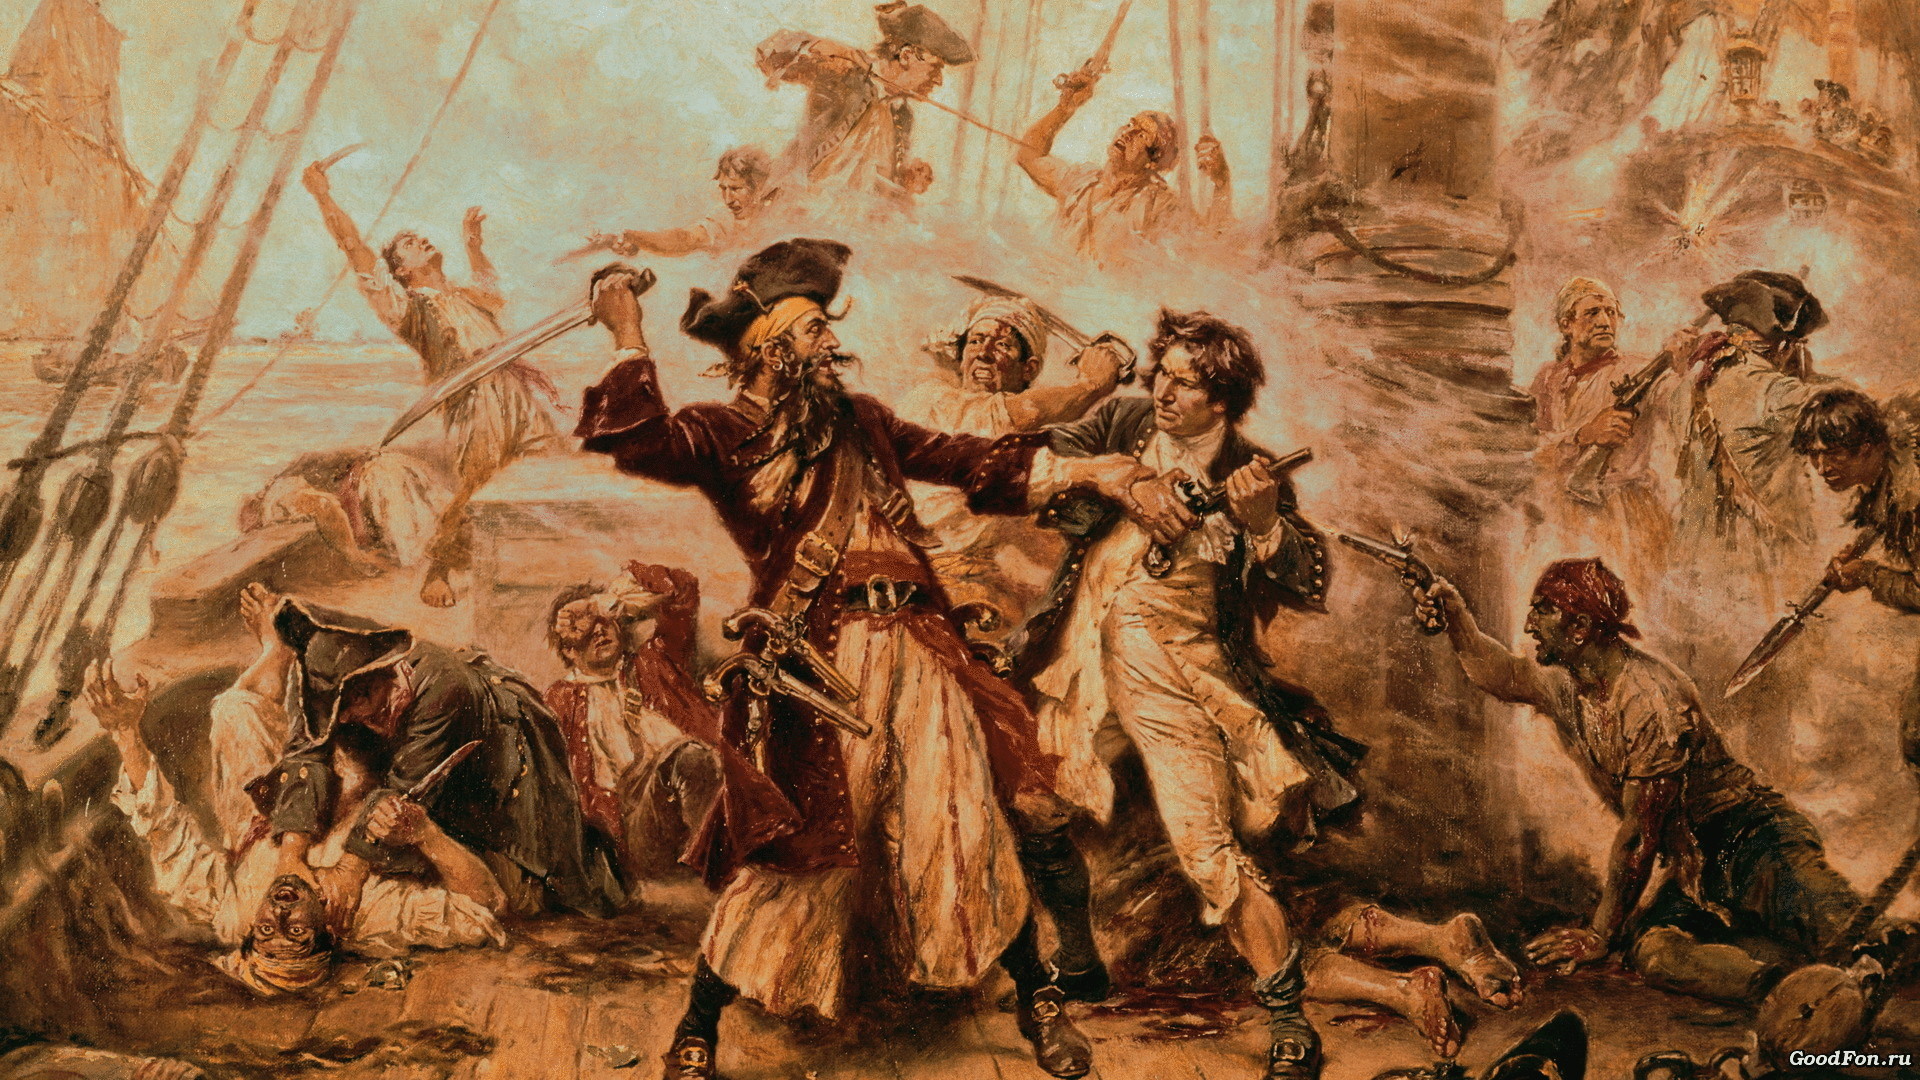 Подборка интересных фактов о пиратах